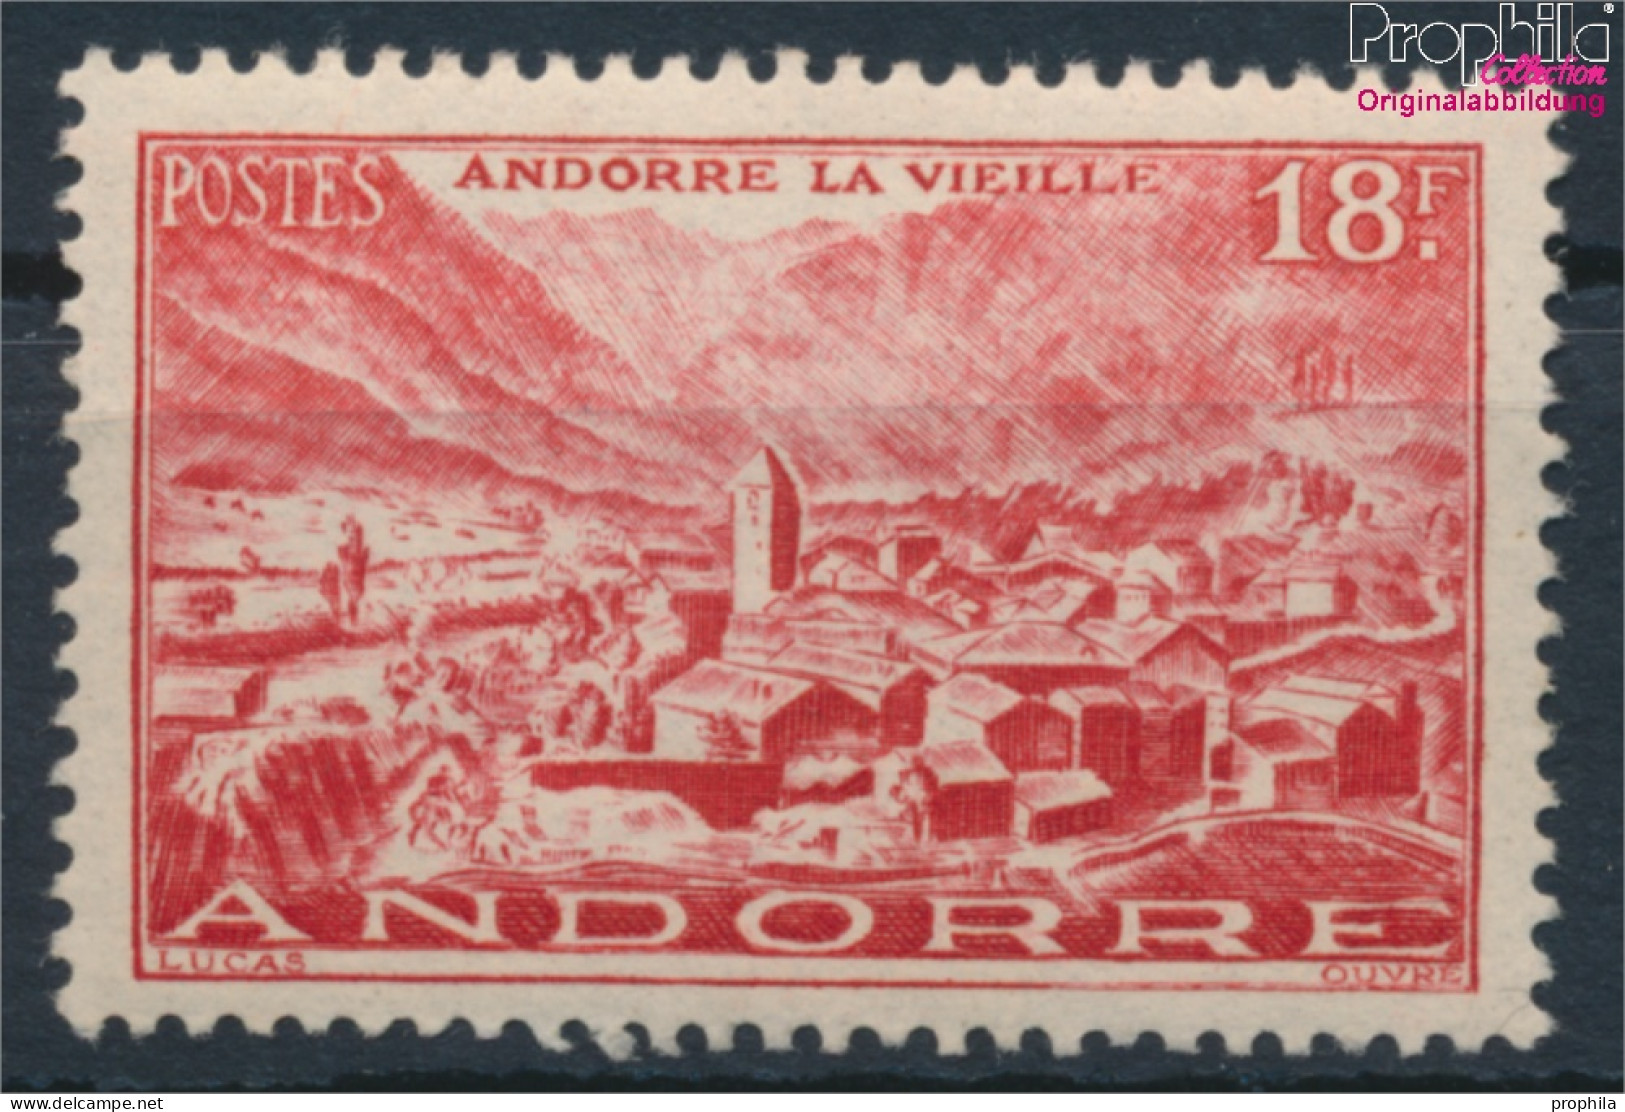 Andorra - Französische Post 133 Postfrisch 1944 Landschaften (10368400 - Ongebruikt